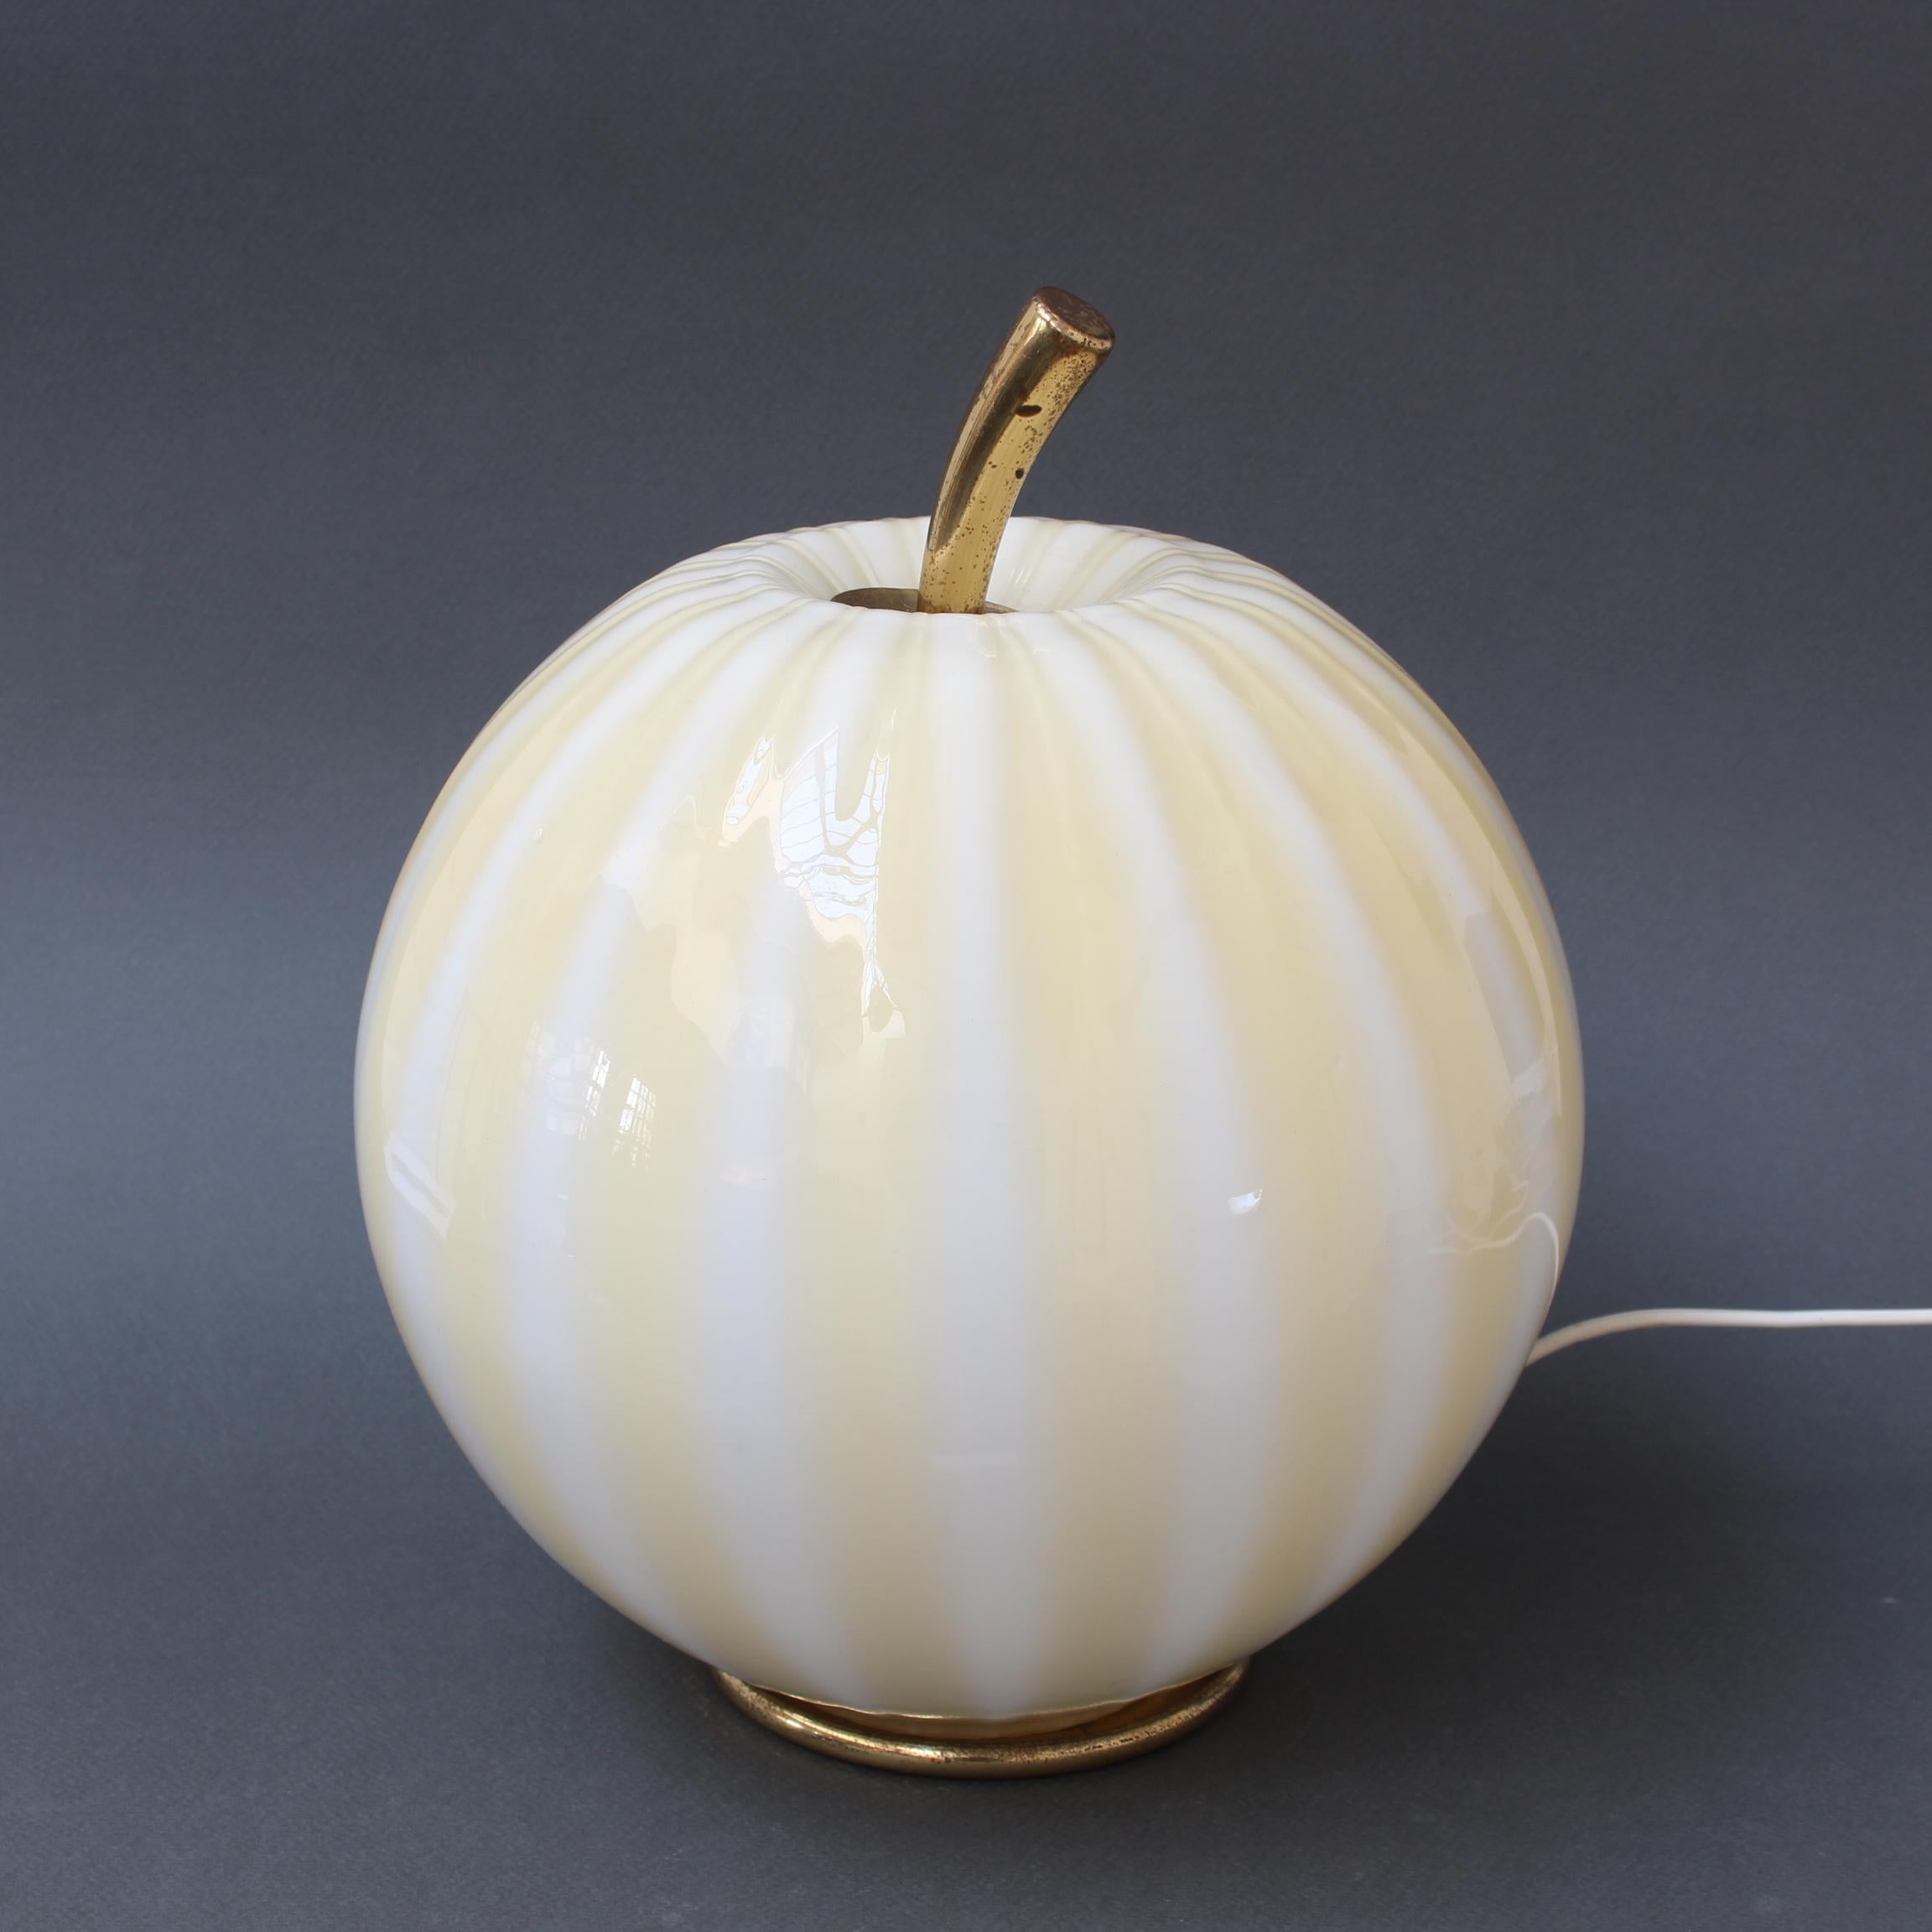 Vintage lampe globe italienne en forme de melon (circa 1960s). Un charme absolu, cette lampe de table rare est une véritable pièce de conversation. La tige et le socle sont en laiton, tous deux présentant une patine de caractère attestant de leur